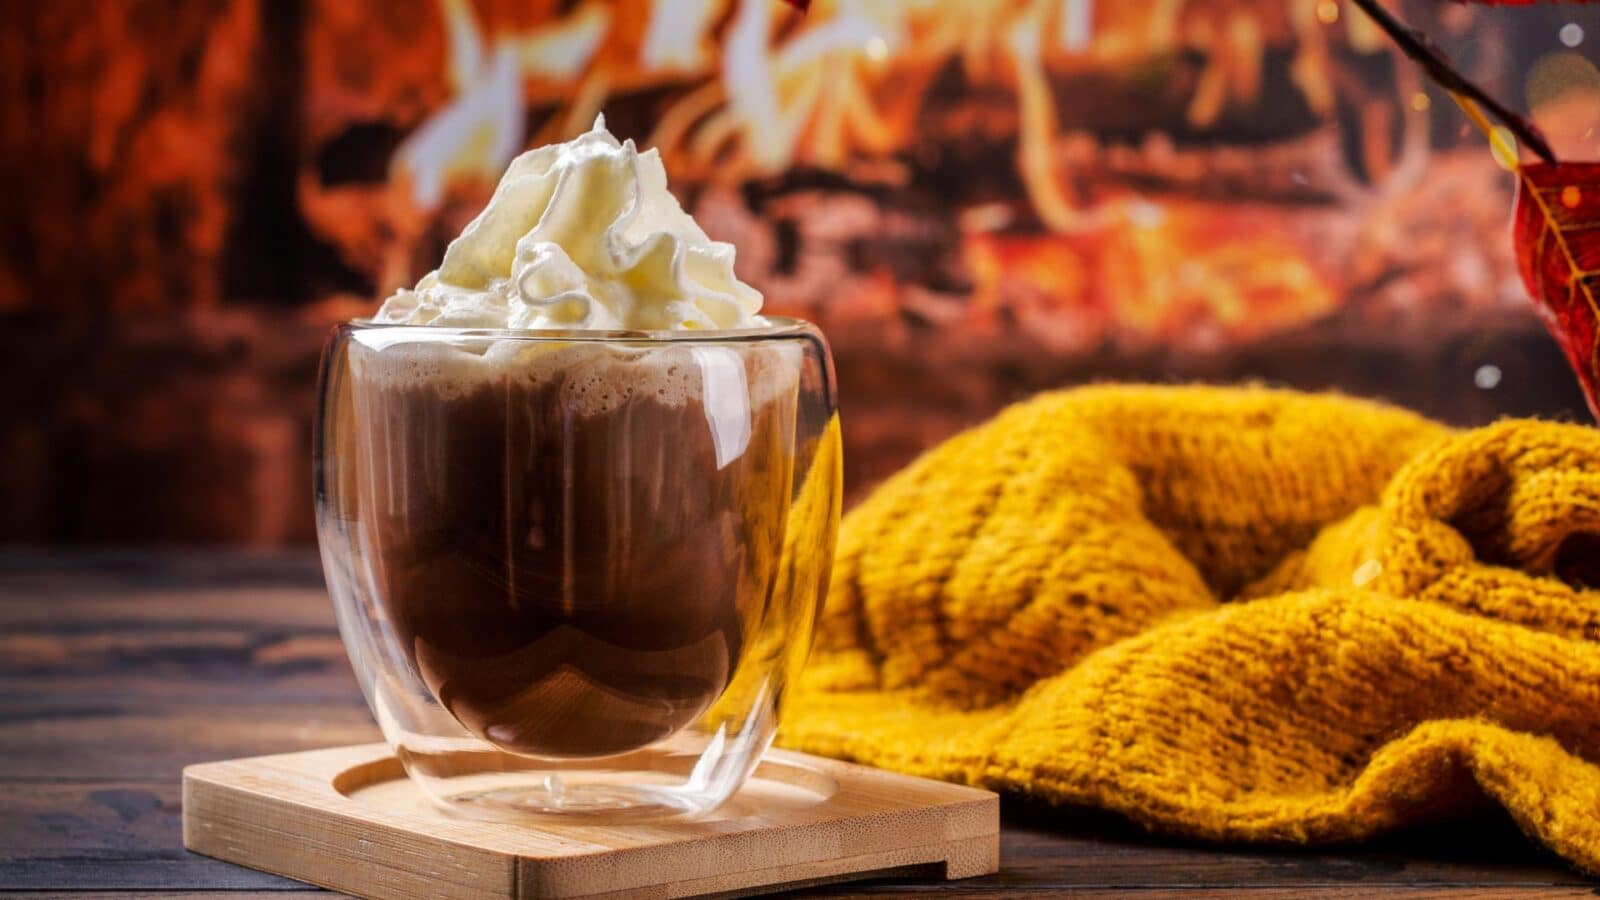 Receita de chocolate quente para uma tarde fria com poucos ingredientes e em minutos